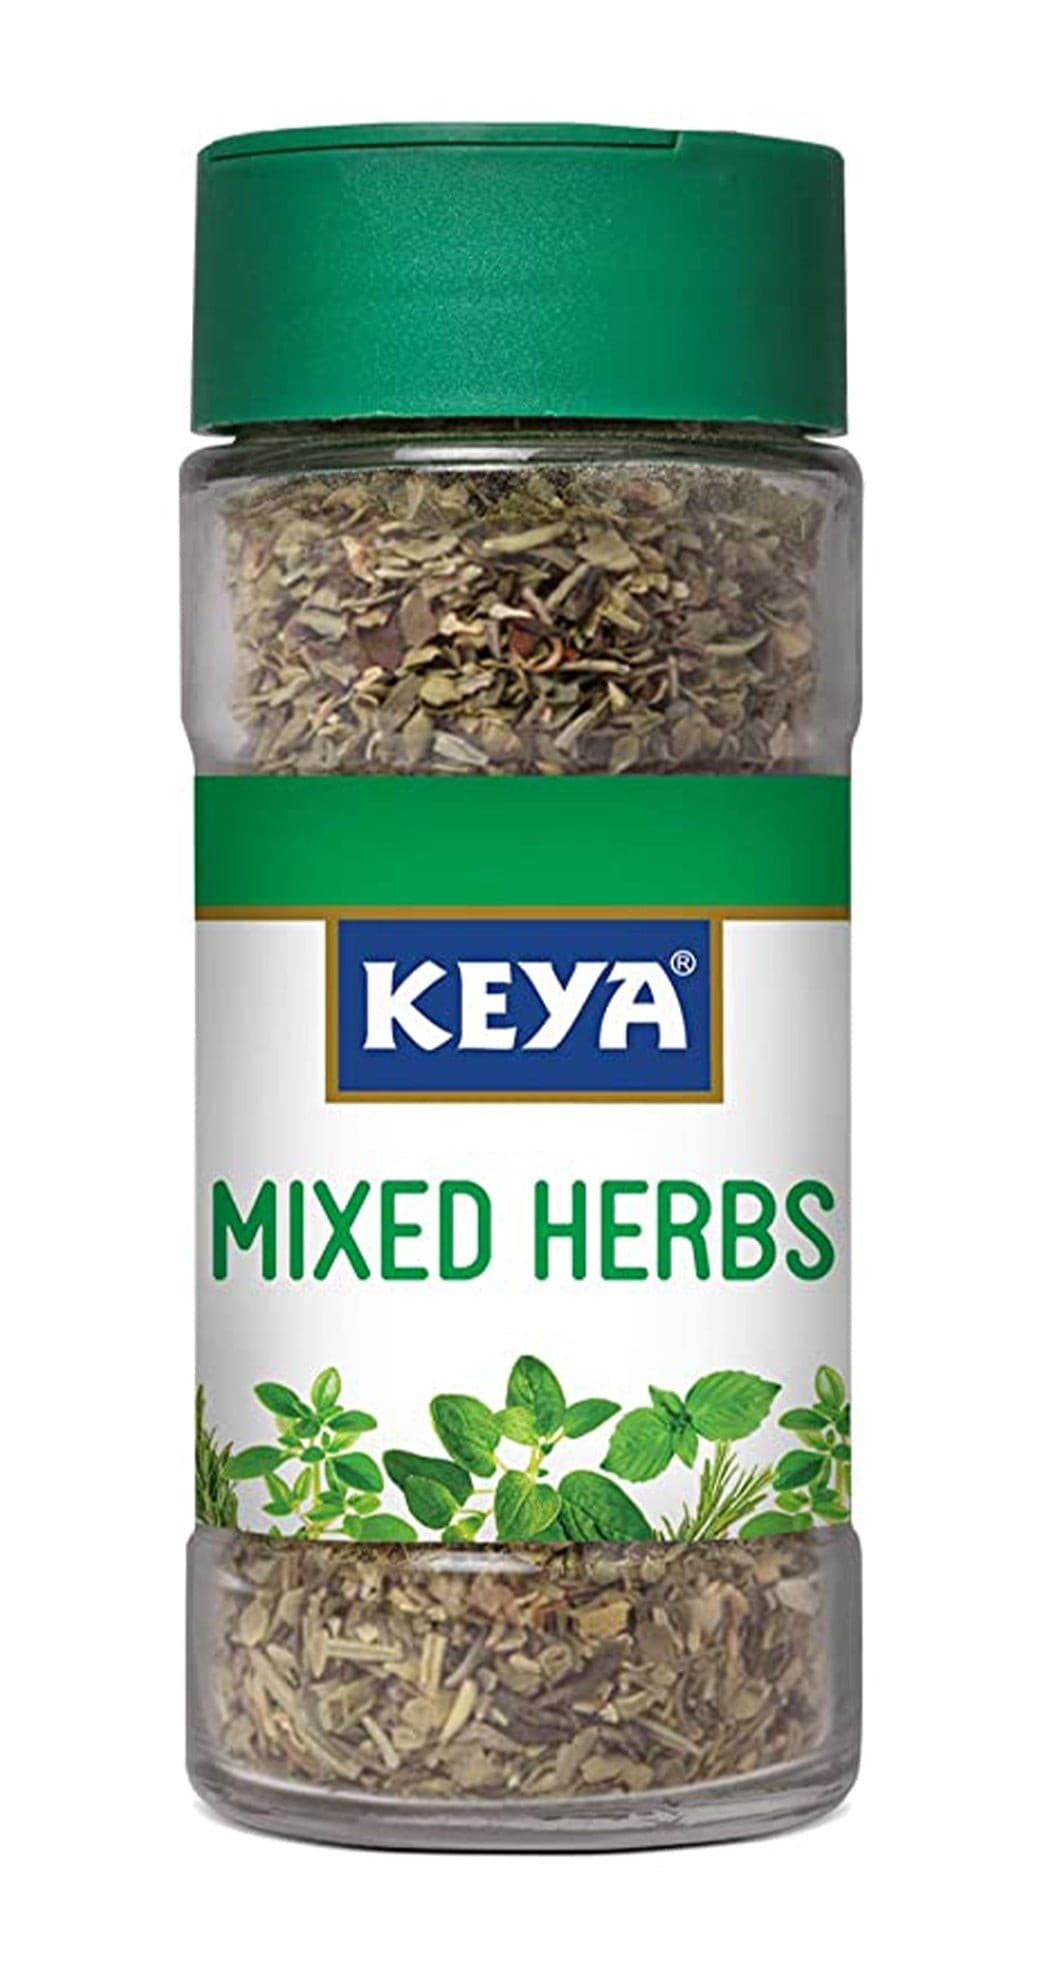 Keya Mixed Herbs (7047388790971)